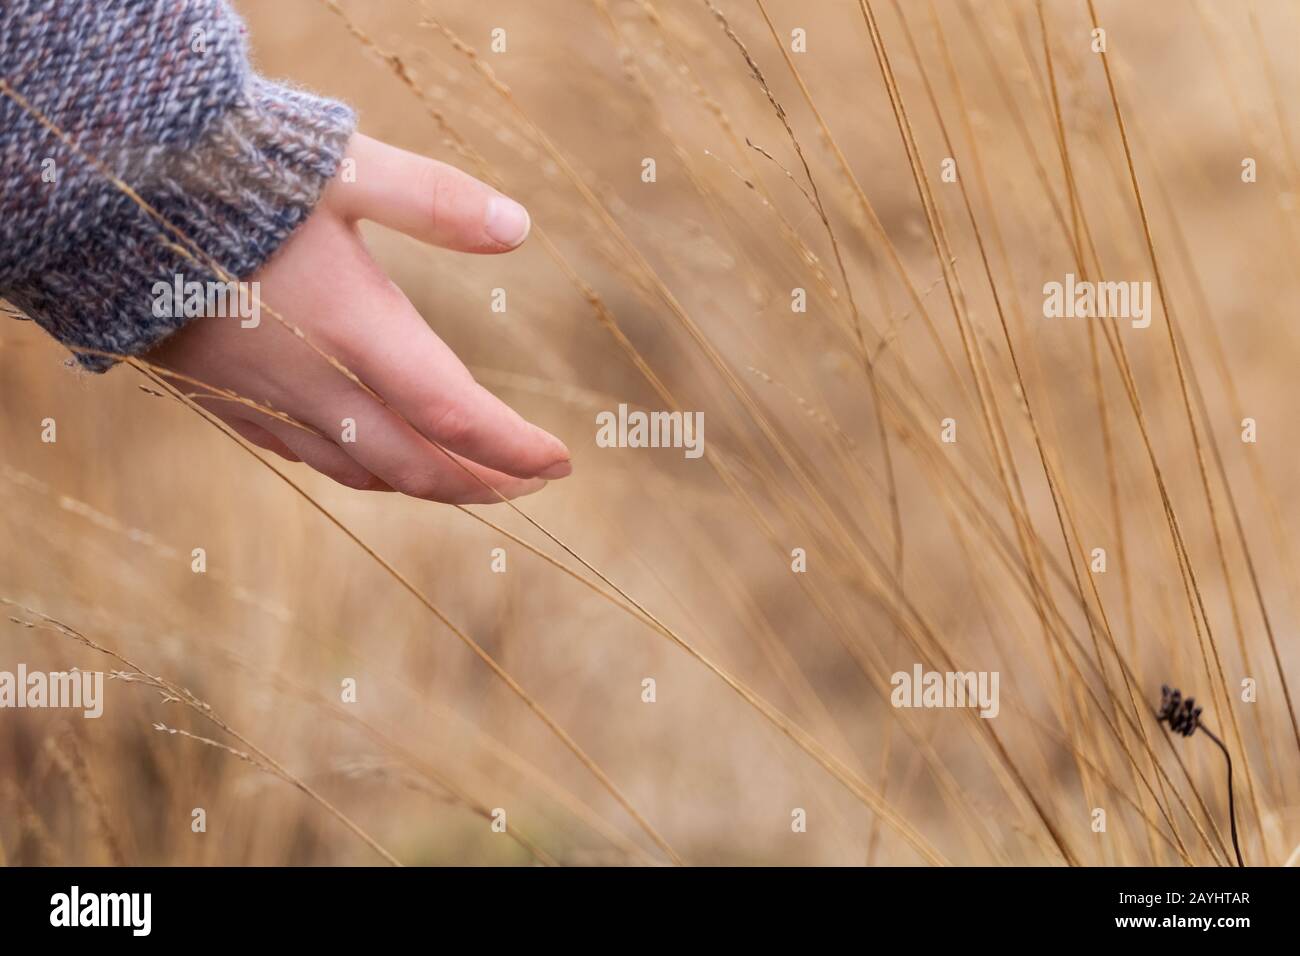 la mano del niño toca la hierba Foto de stock